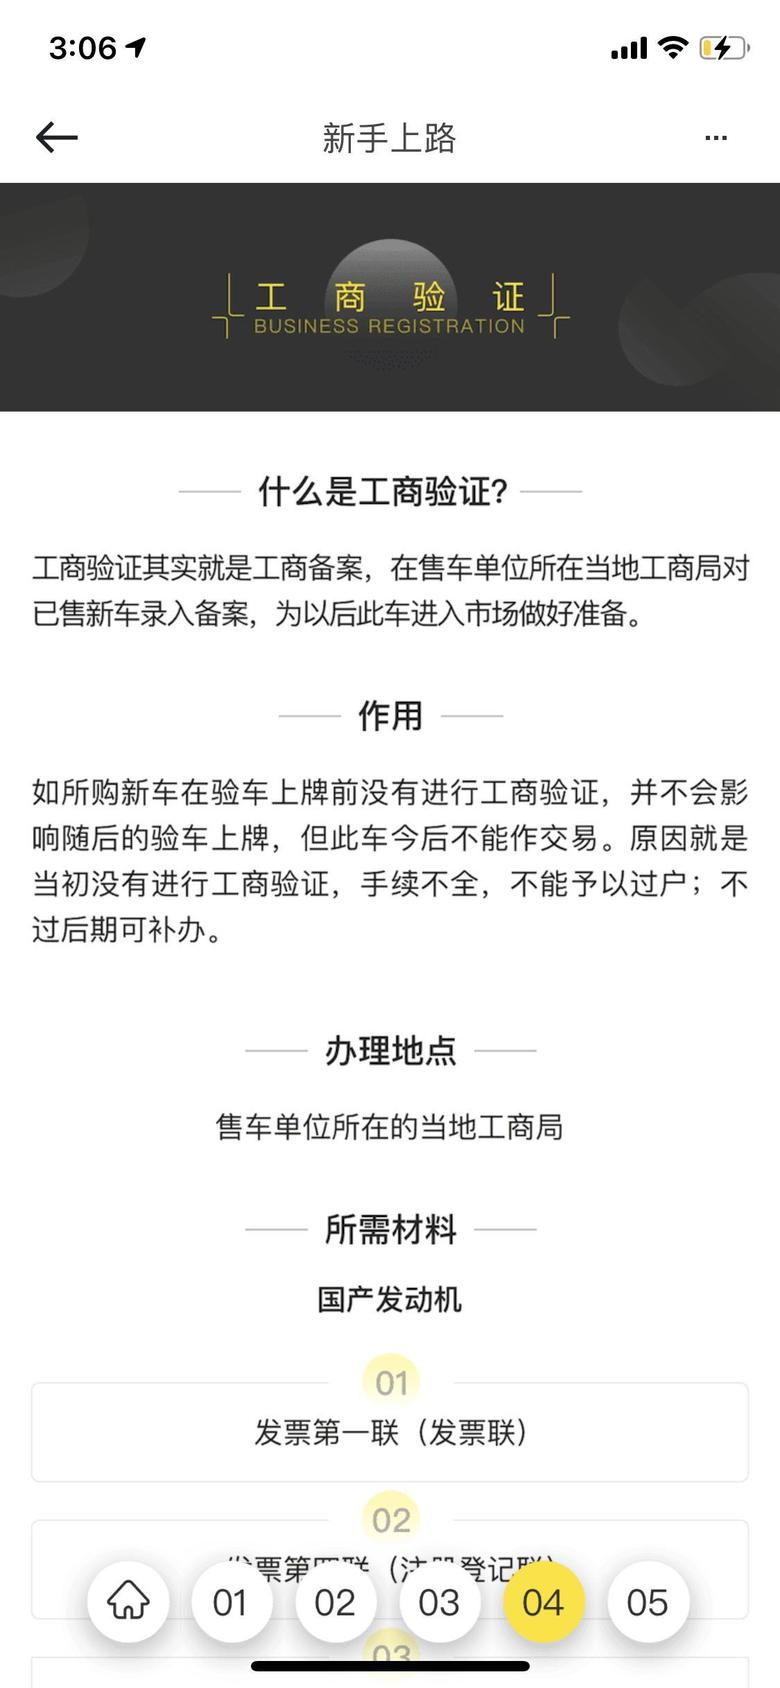 探岳 按照懂车帝app的新手上路流程，第四步是工商验证，我问4s店的销售他们说没有这一步，网上也只查到北京有这个的新闻，请问一下上海需要办这个吗？